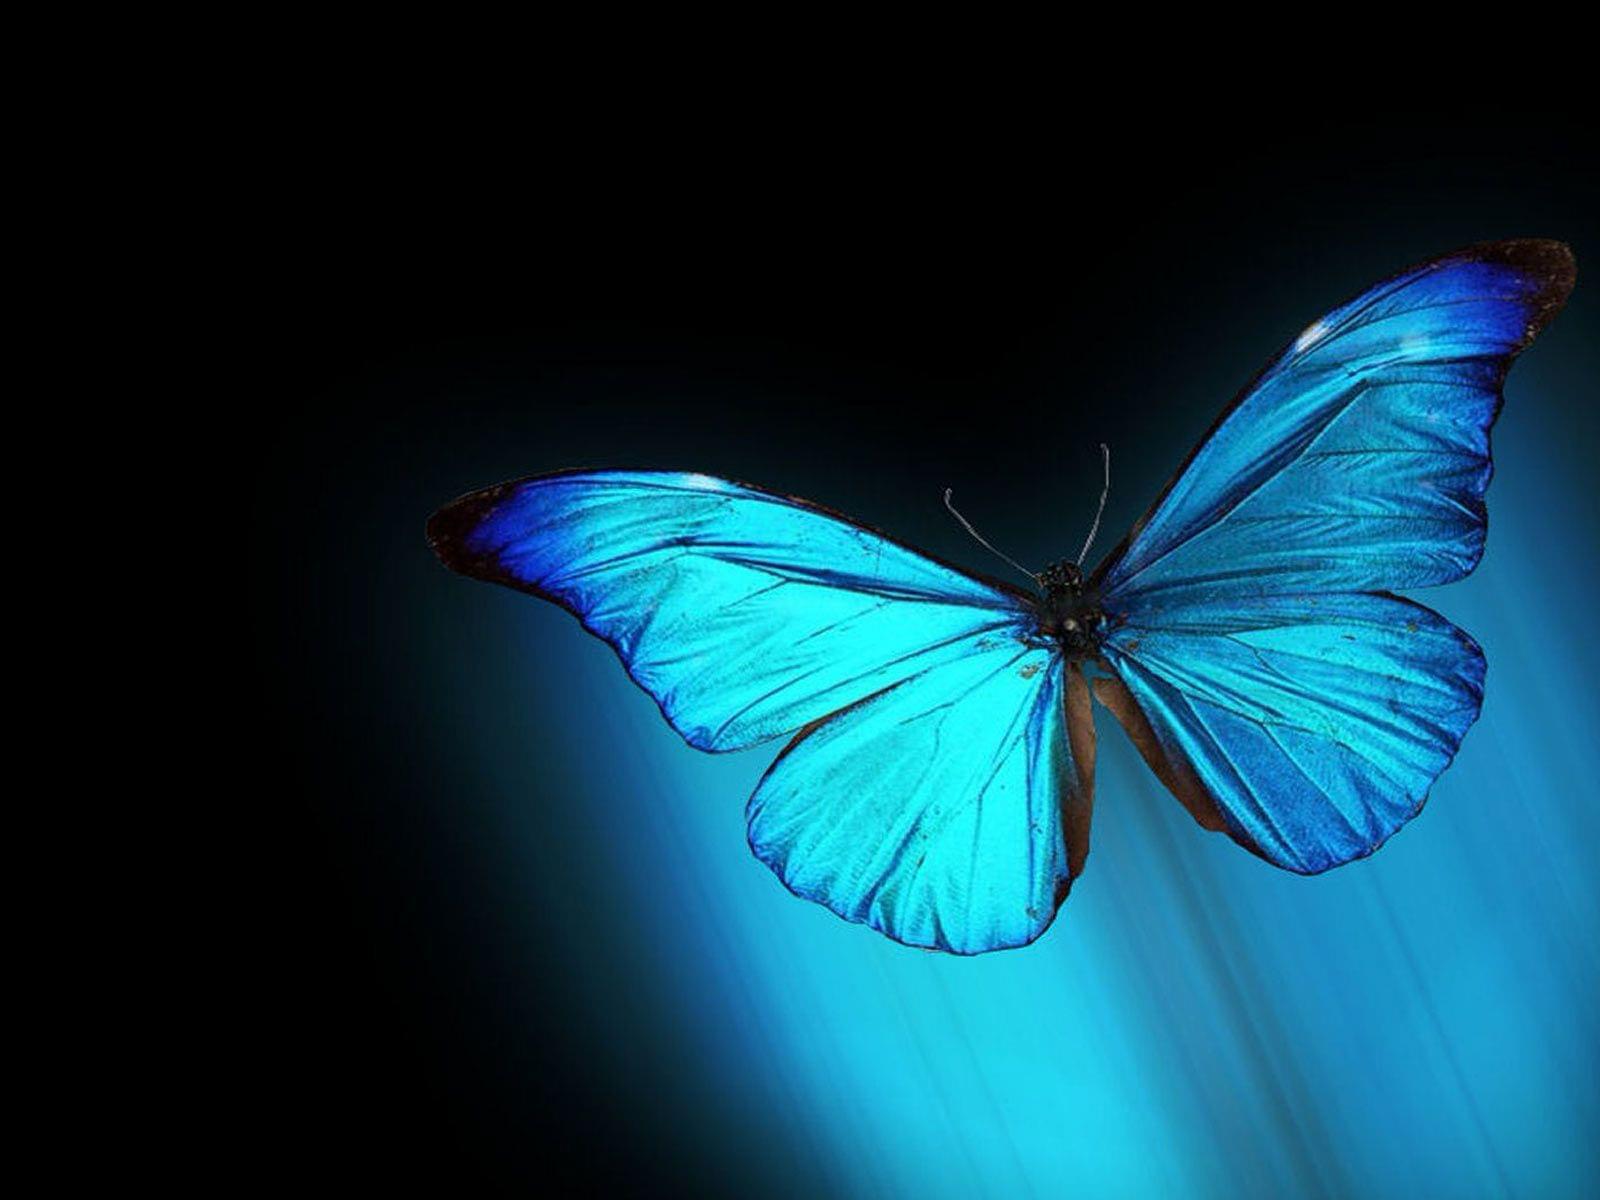 vlinder_blauw_zwart.jpg